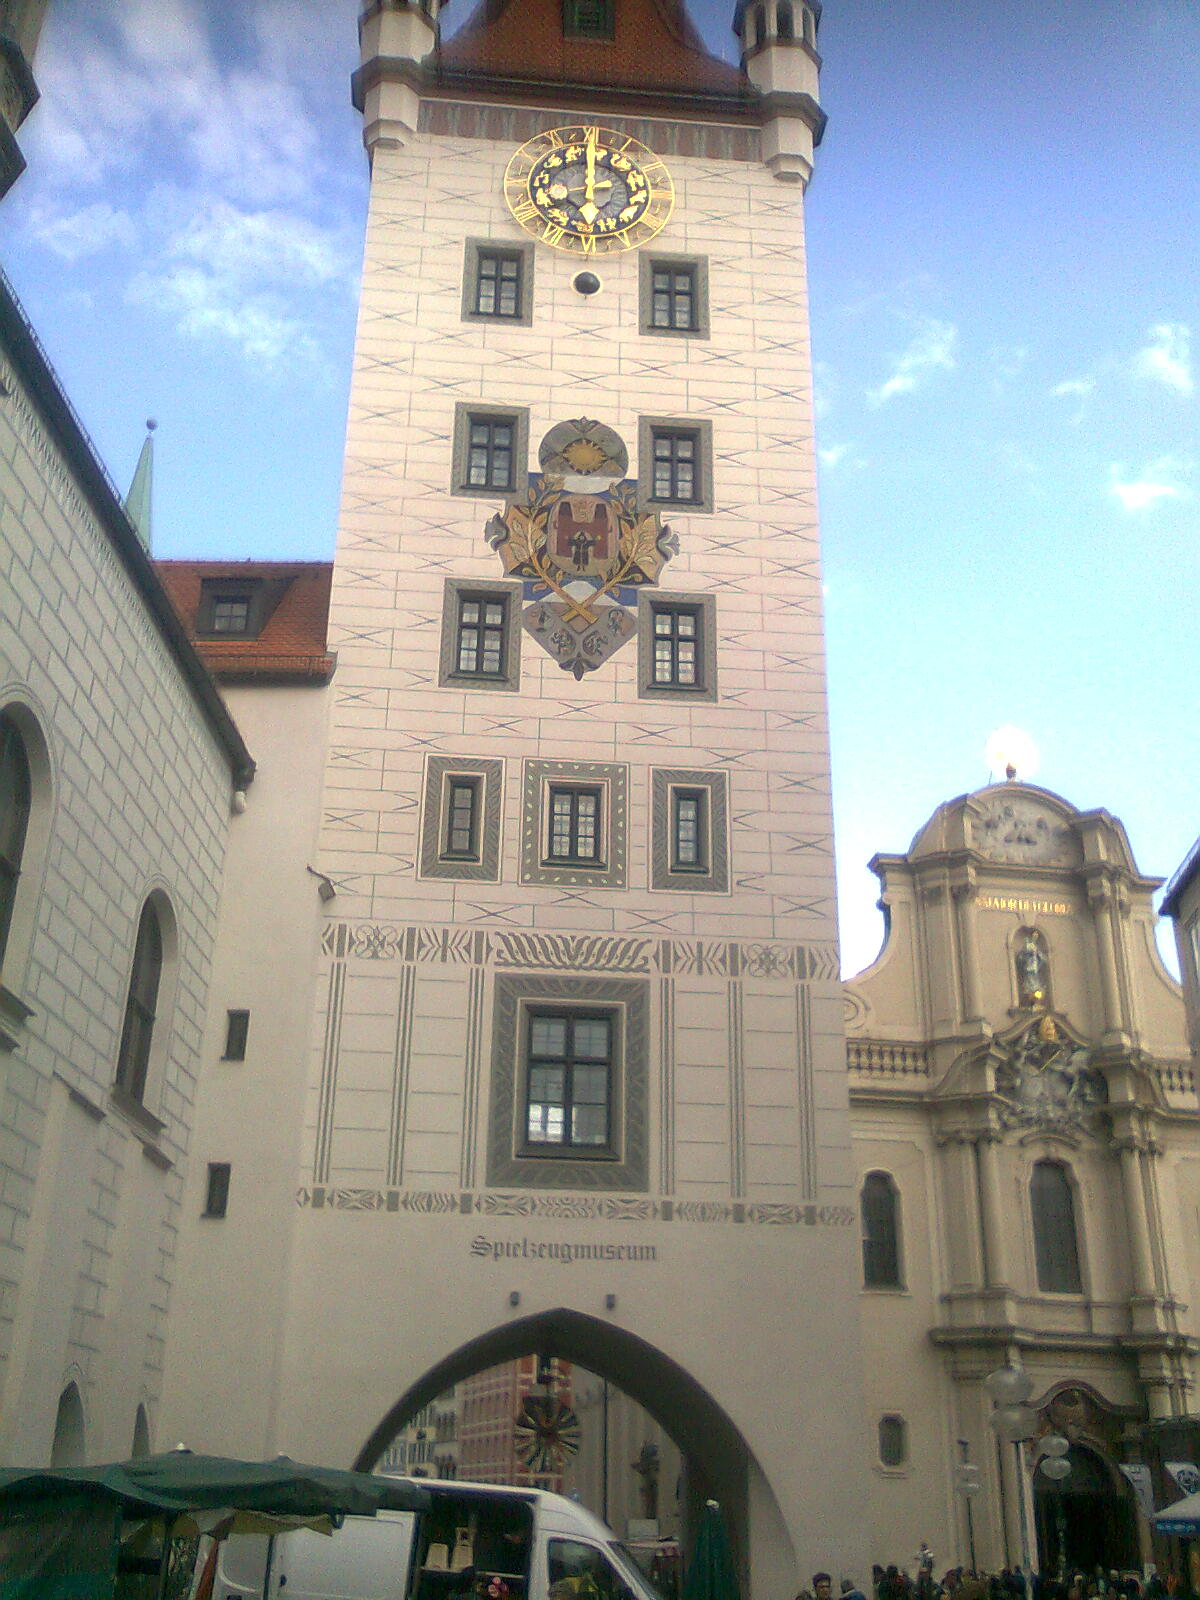 Bild 2 Spielzeugmuseum im Alten Rathausturm in München